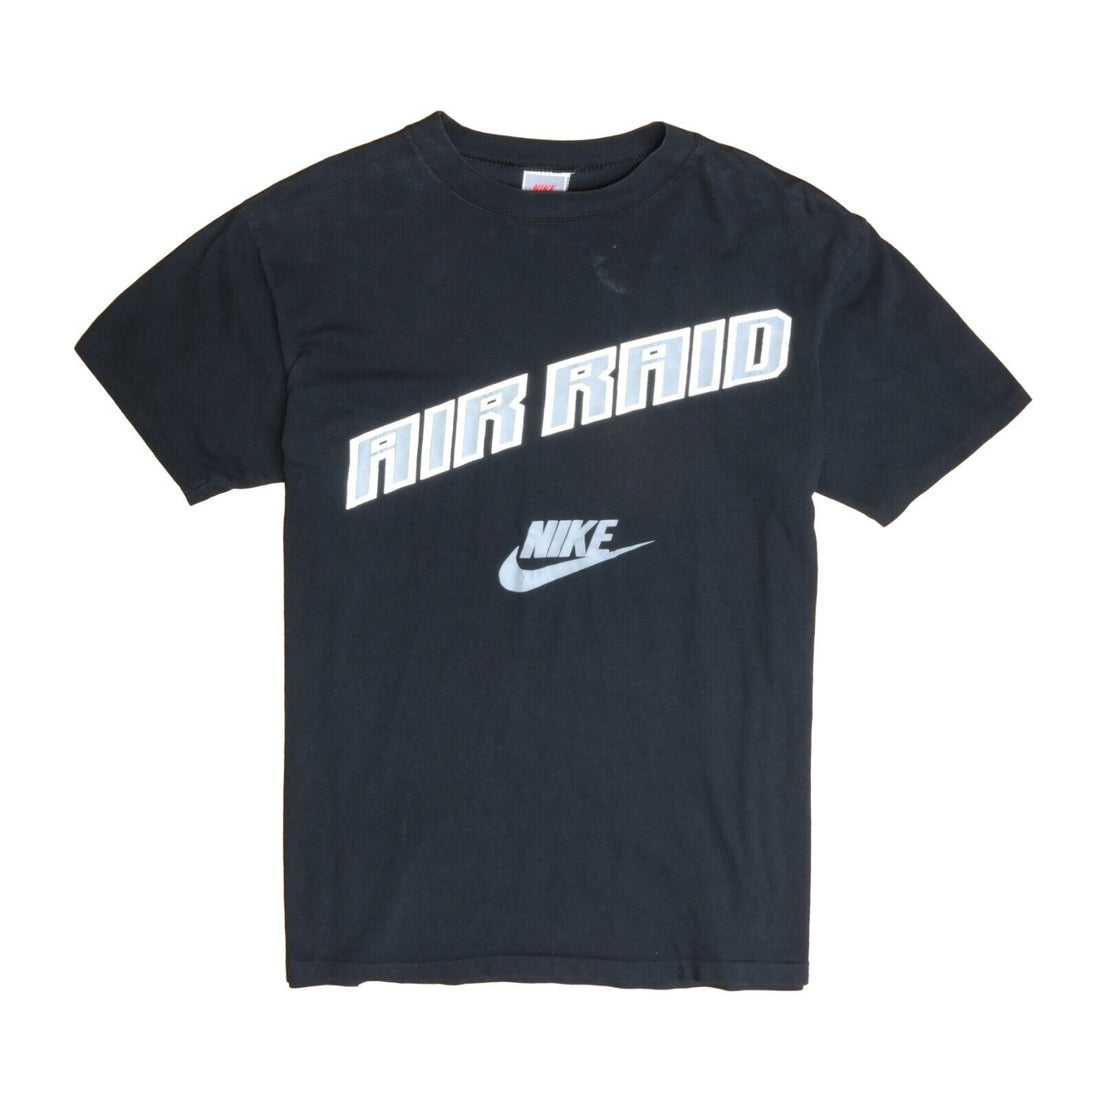 Vintage Nike Air Raid T-Shirt Size Small Black 80s 90s